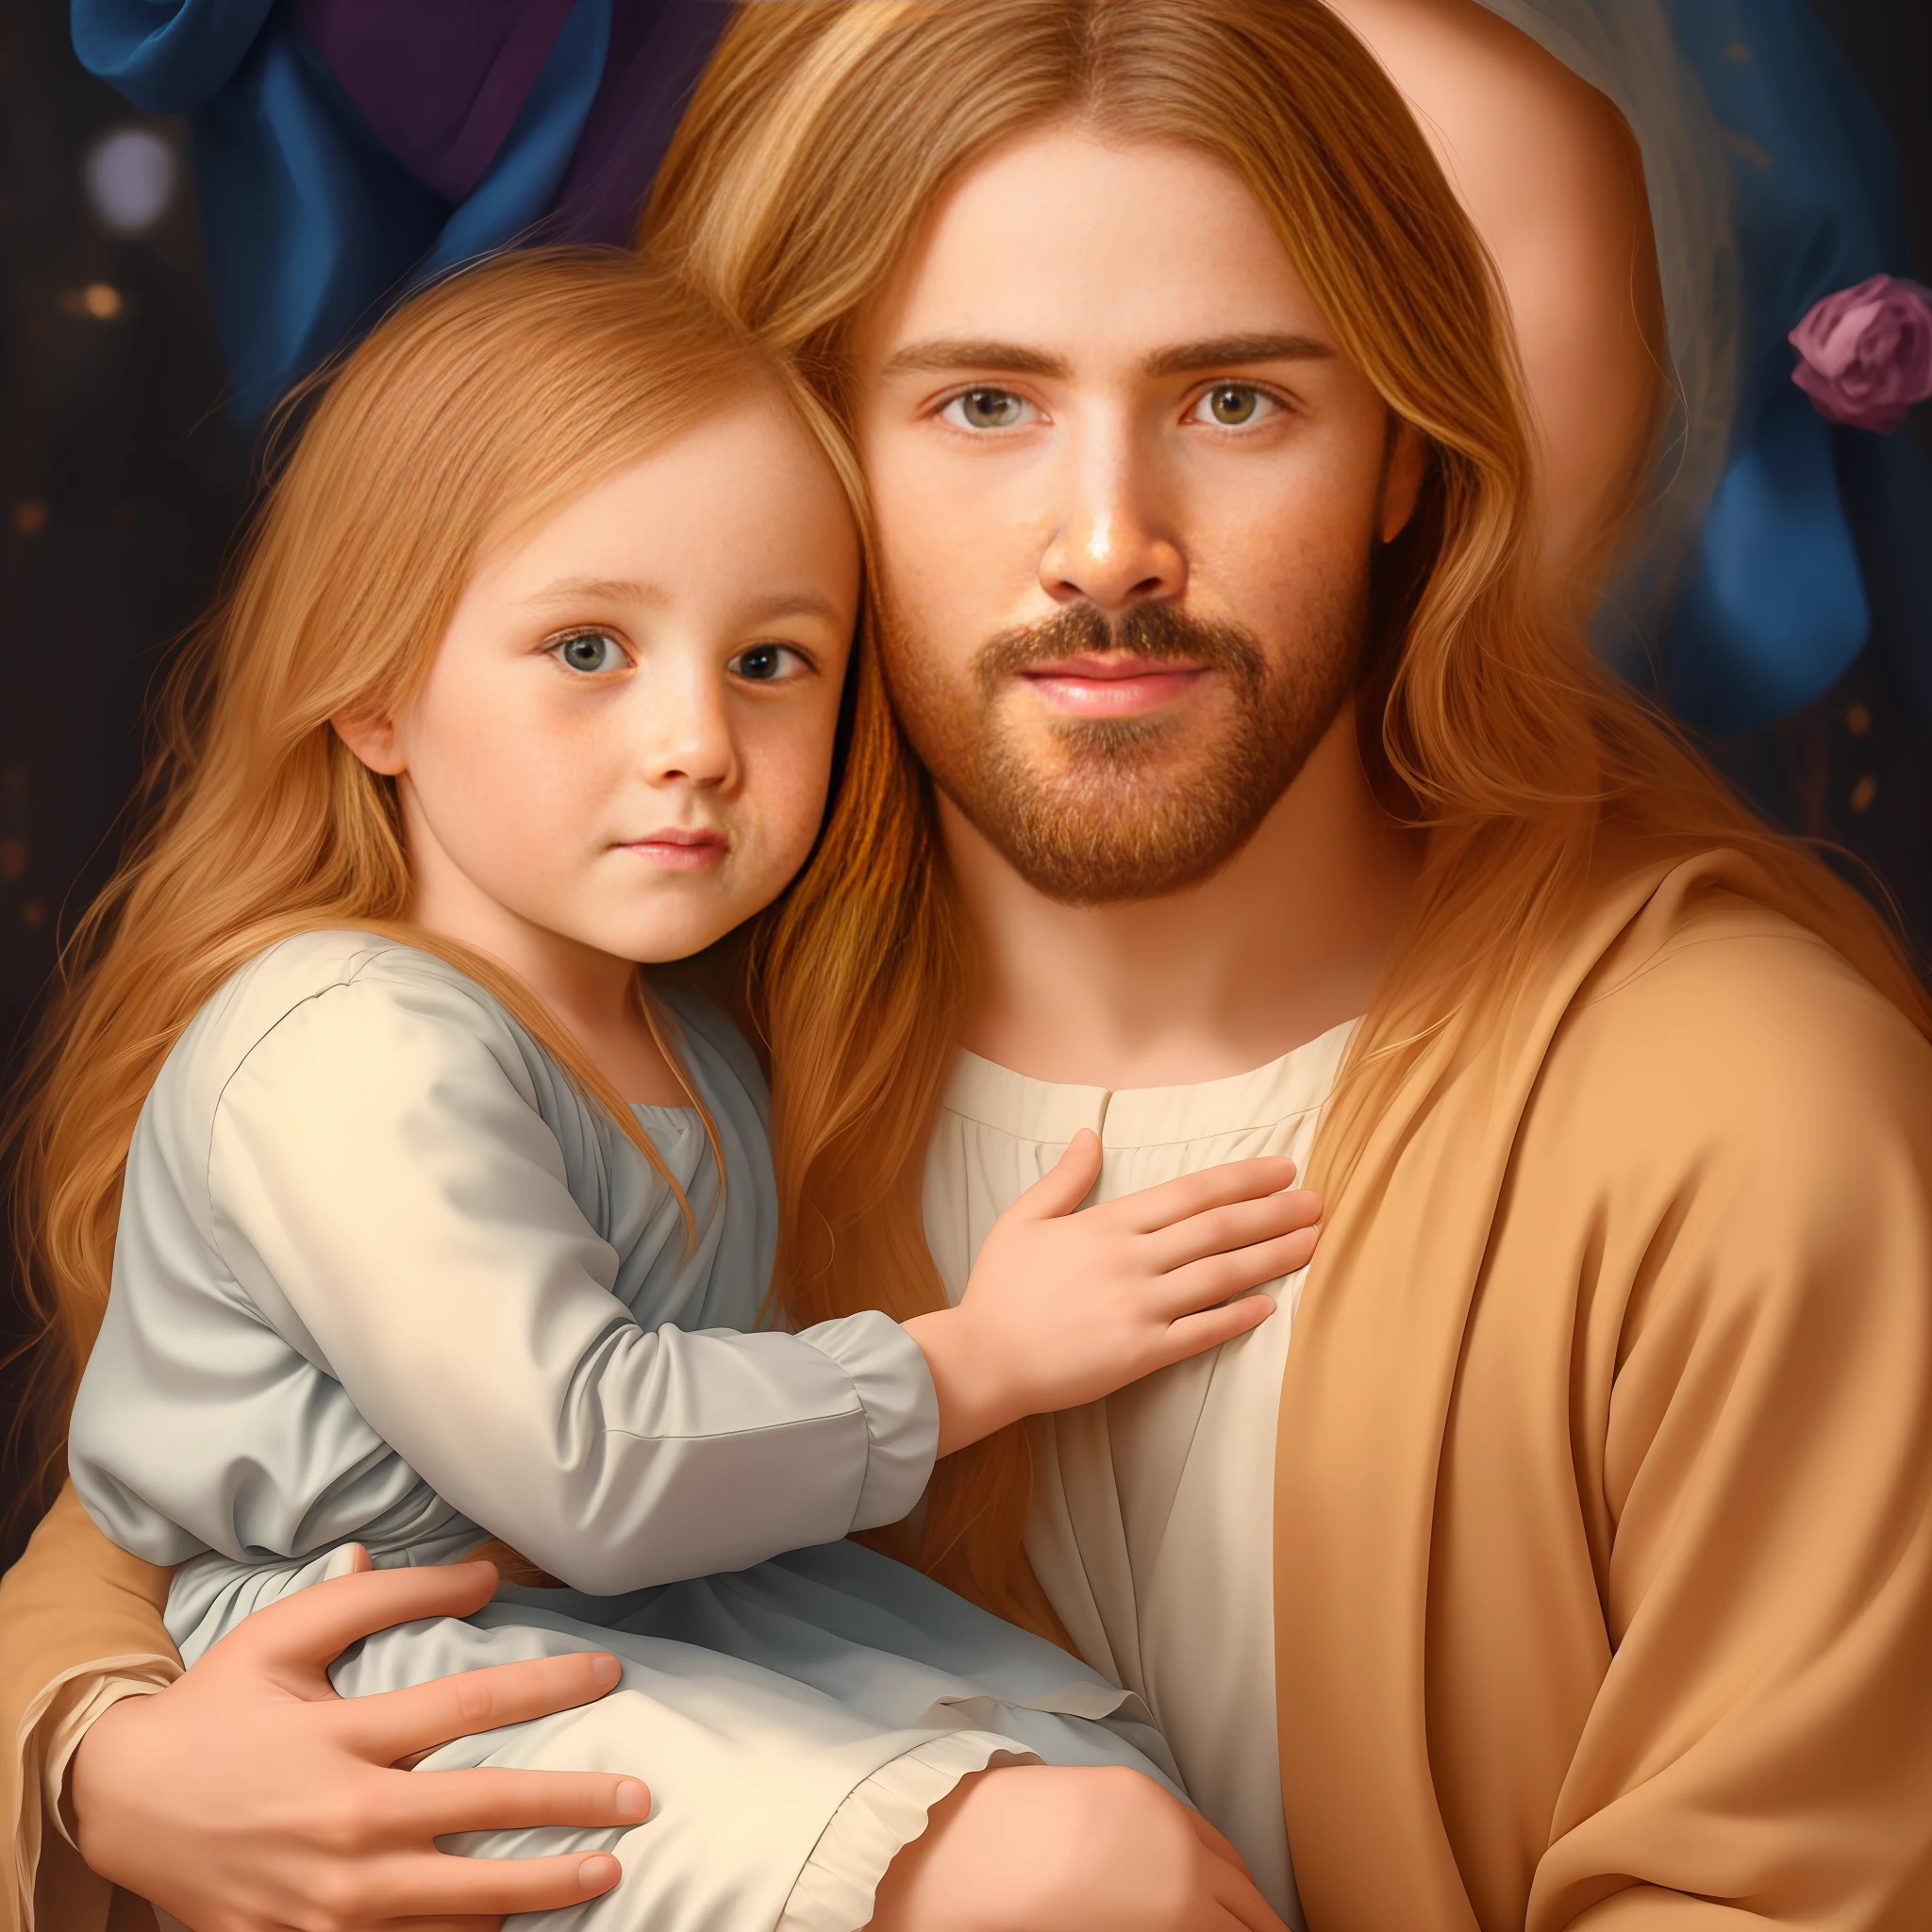 Jesus in seinen Armen